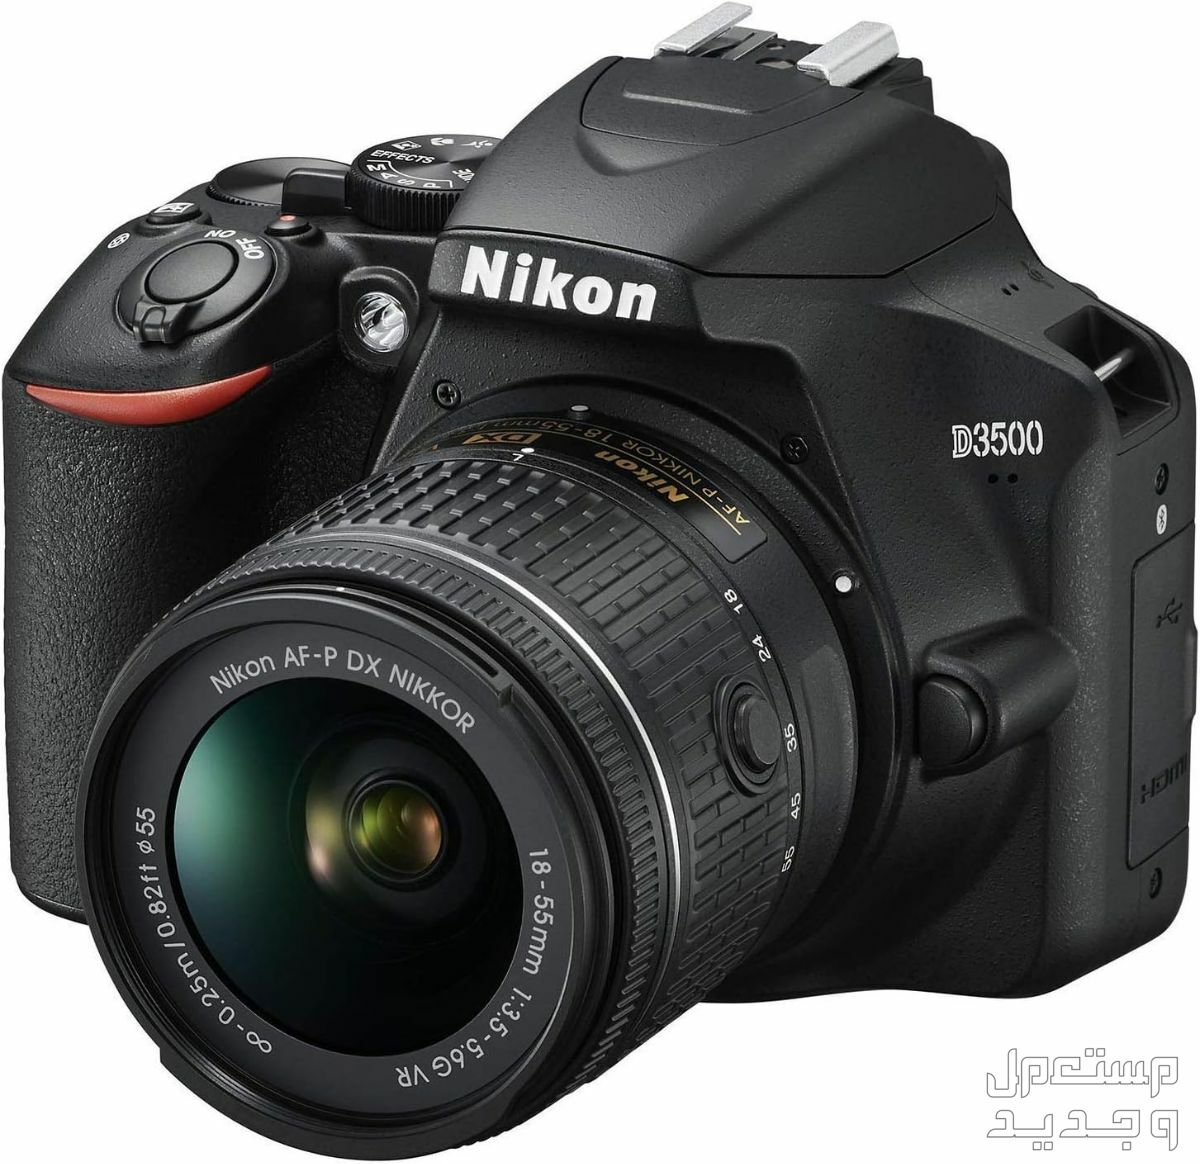 10 كاميرات تصوير ماركات عالمية بأسعار رخيصة في سوريا مميزات كاميرا Nikon D3500